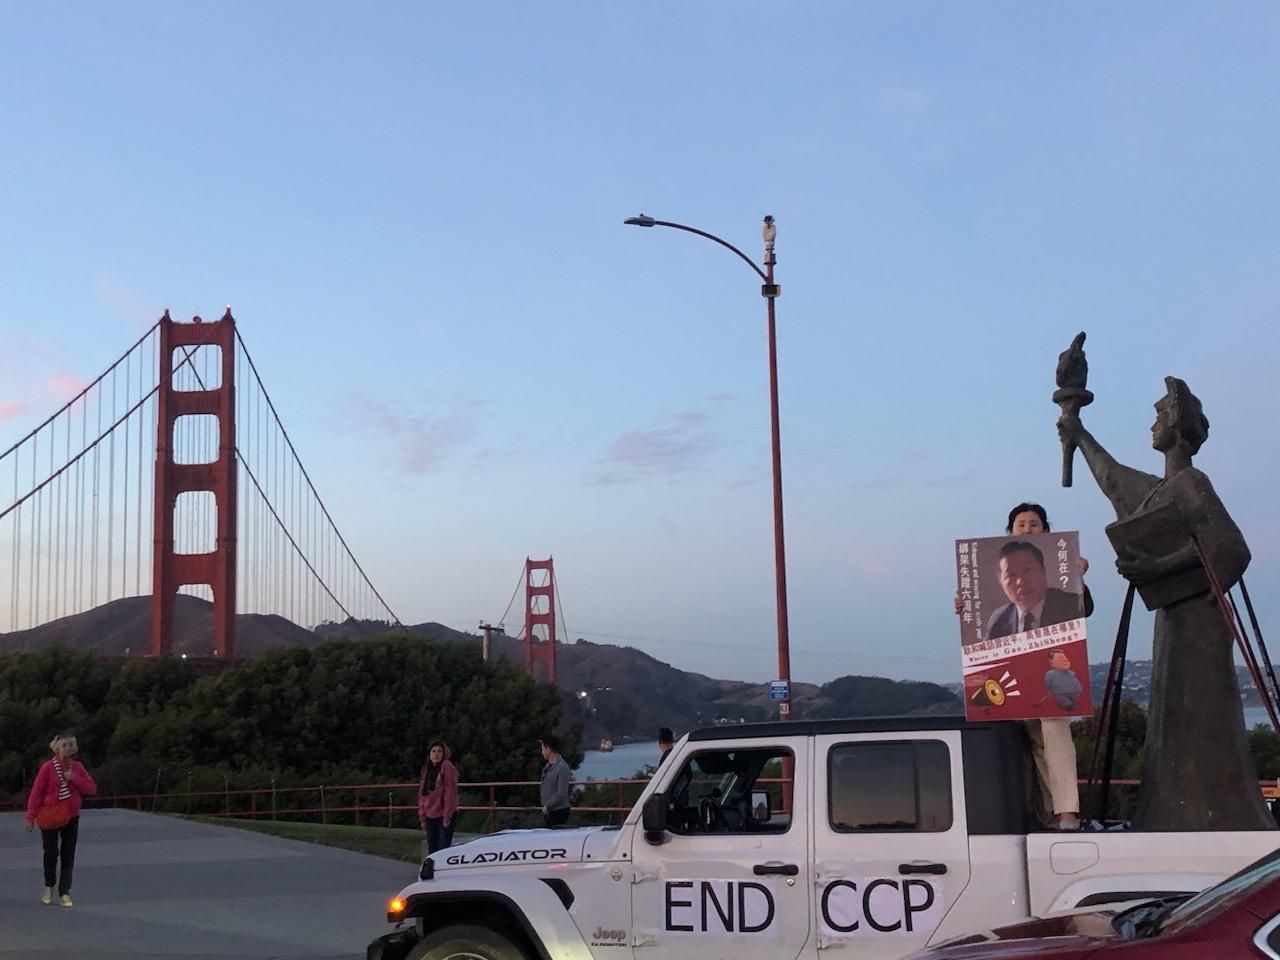 Hôm 10/11, bà Cảnh Hòa đã tham gia cuộc diễn hành bằng xe hơi trước thềm hội nghị APEC ở San Francisco, yêu cầu trả tự do cho ông Cao Trí Thịnh và kêu gọi giải thể ĐCSTQ. (Ảnh do ông Trần Duy Minh cung cấp)